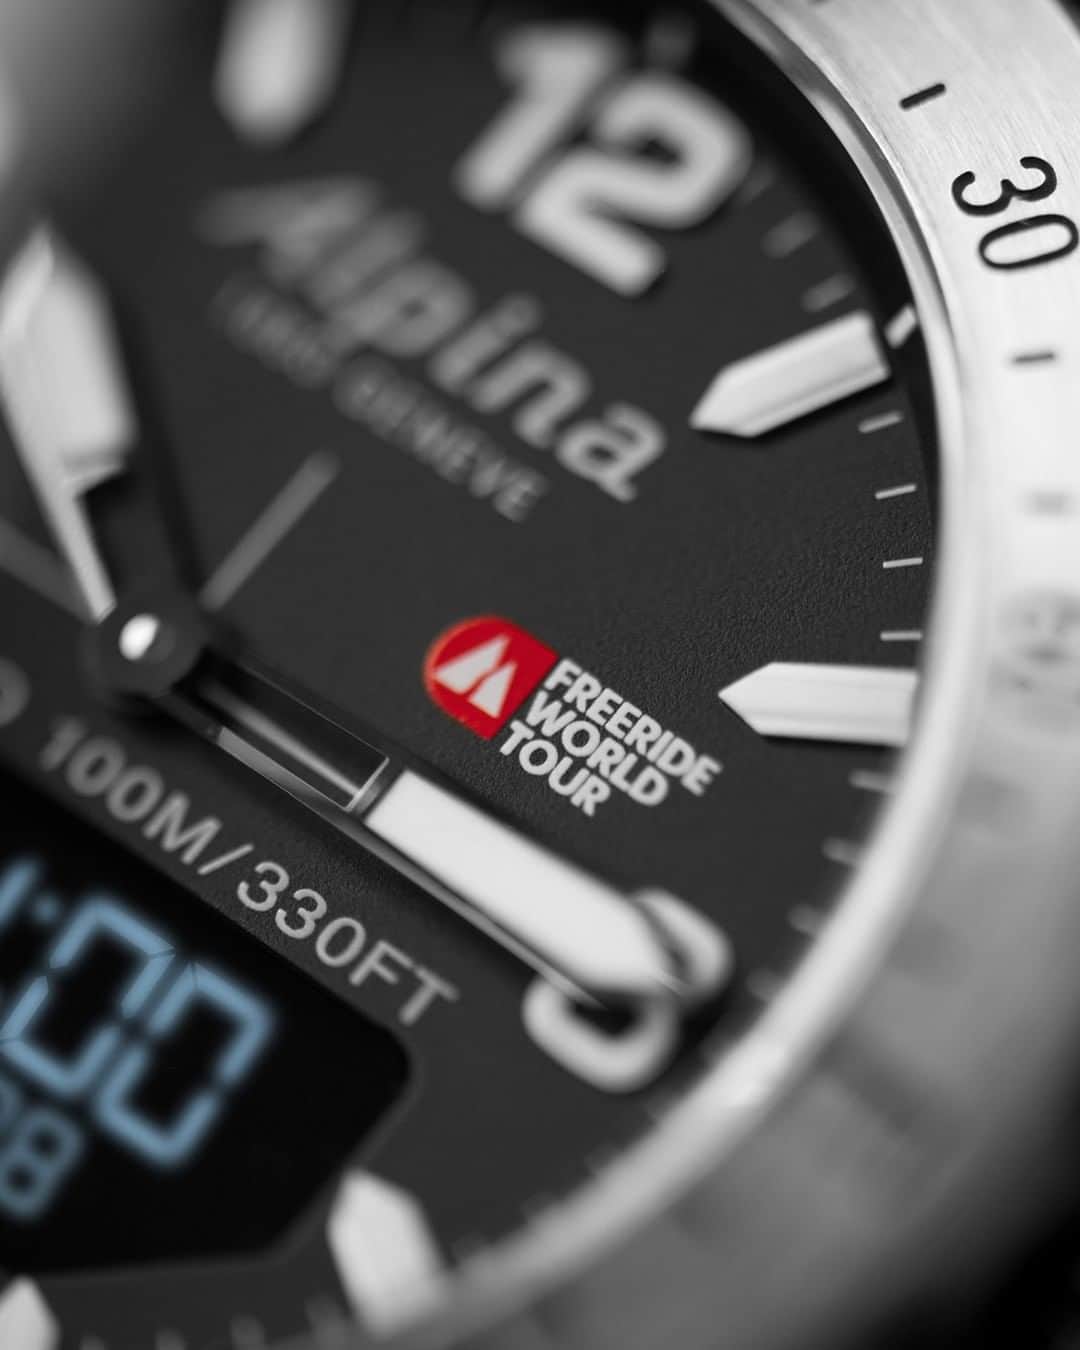 Alpina Watches Japanのインスタグラム：「デザイン性の高さで他と差をつけるハイスペックなスマートウォッチ ㅤㅤㅤㅤㅤㅤㅤㅤㅤㅤㅤㅤㅤ ワールドタイマーにUVセンサー、高度計、気圧計と、とにかく多機能なため、これひとつでマルチに使える優秀ギア。あらゆるブランドからスマートウォッチが登場する中、特筆すべきはアルピナならではの洗練されたデザイン。得意のスポーティな仕様でありながら、あくまでスタイリッシュさにこだわる姿勢を貫いています。 ㅤㅤㅤㅤㅤㅤㅤㅤㅤㅤㅤㅤㅤ 《アルパイナー X》 AL-283FWT5SAQ6 ¥121,000+tax クォーツ、10気圧防水、ラバーストラップ . . . . . . #Alpina #AlpinaWatchesJapan #swissmade #swisswatch #watch #wristwatch #sportwatch #outdoor #alpiner #smartwatch #worldtimer #UV #altimeter #compass #limitededition #specialedition #アルピナ #アルピナウォッチ #スイス時計 #時計 #腕時計 #スポーツウォッチ #アウトドア #アルパイナー #スマートウォッチ  #ワールドタイマー #UVセンサー #高度計 #気圧計 #世界限定」